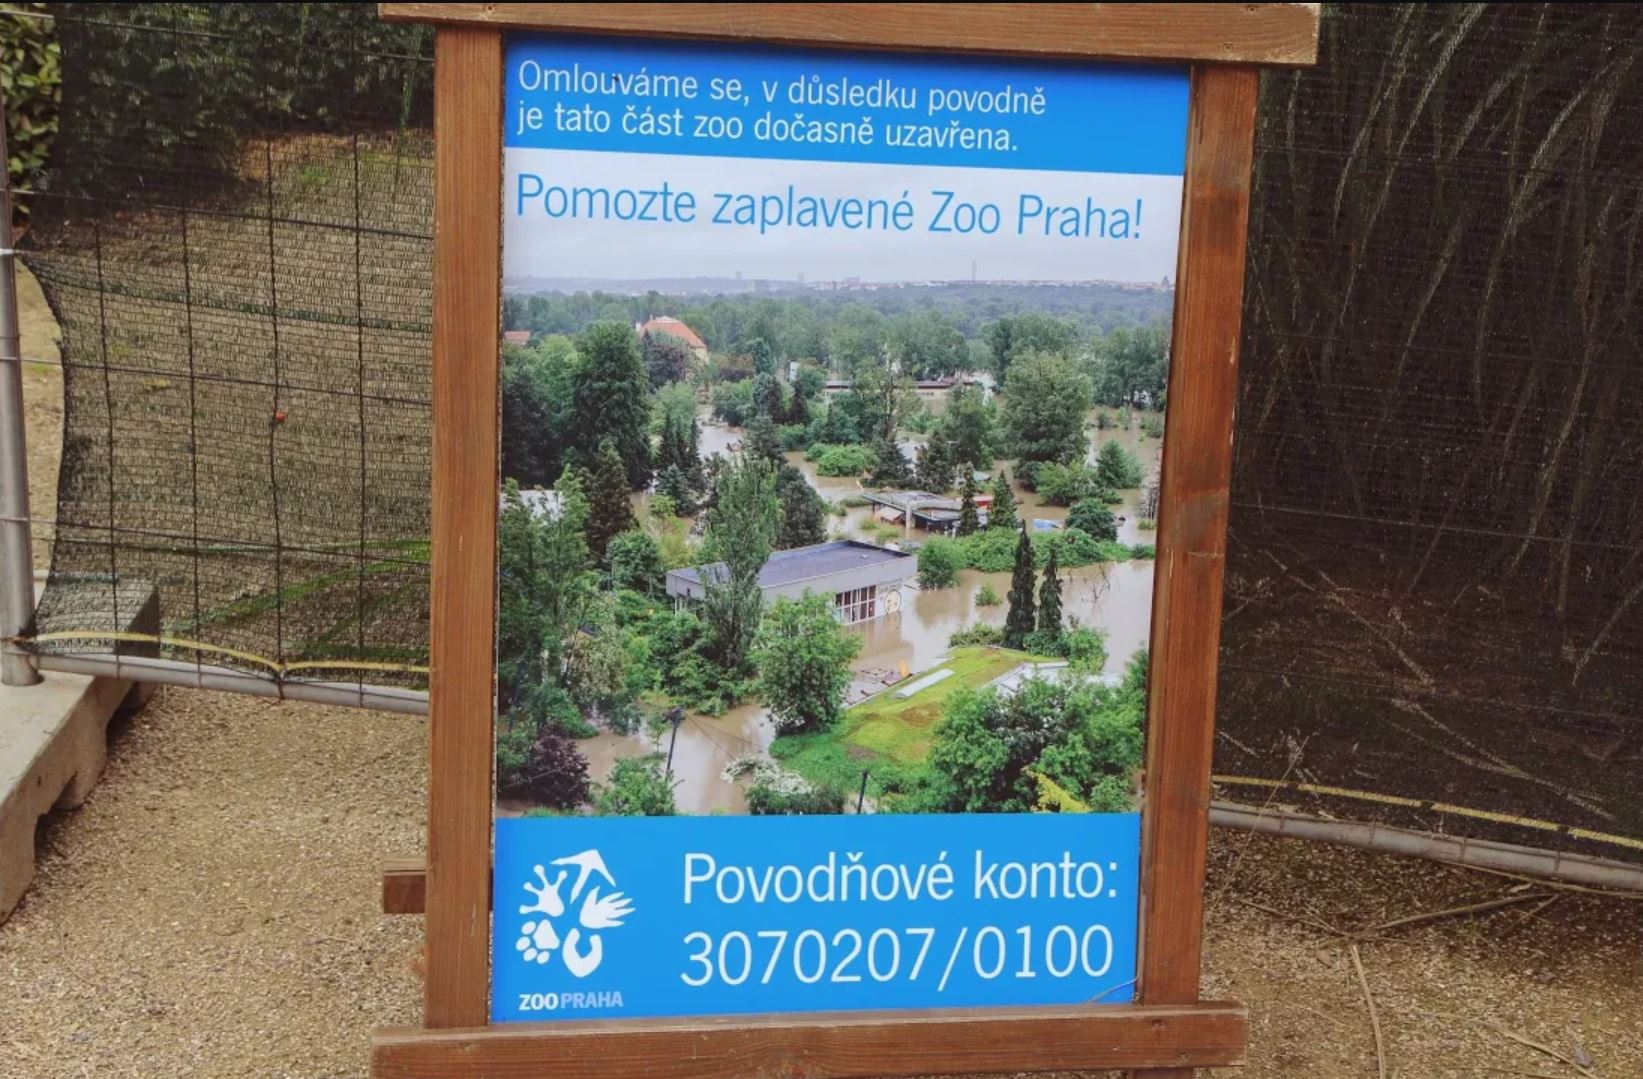 ЧЕХИЯ - Пражский зоопарк. Каких животных, птиц и кого ещё Вы там увидите